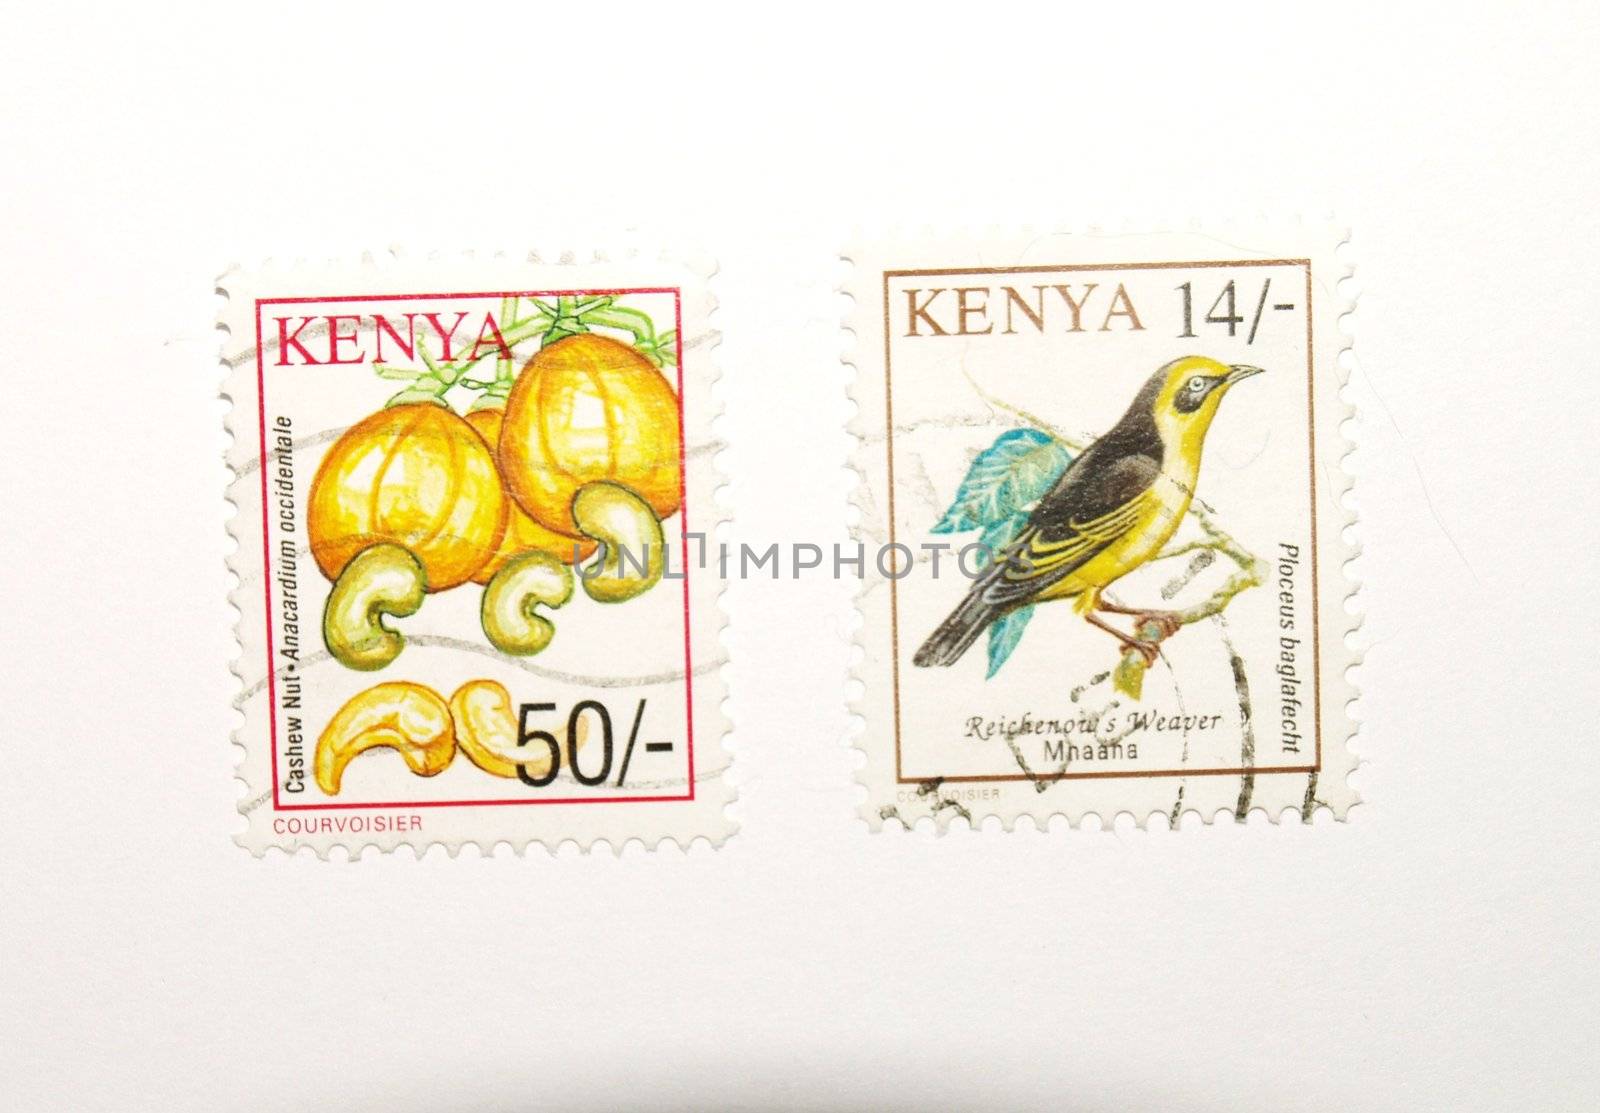 kenyan stamps by viviolsen